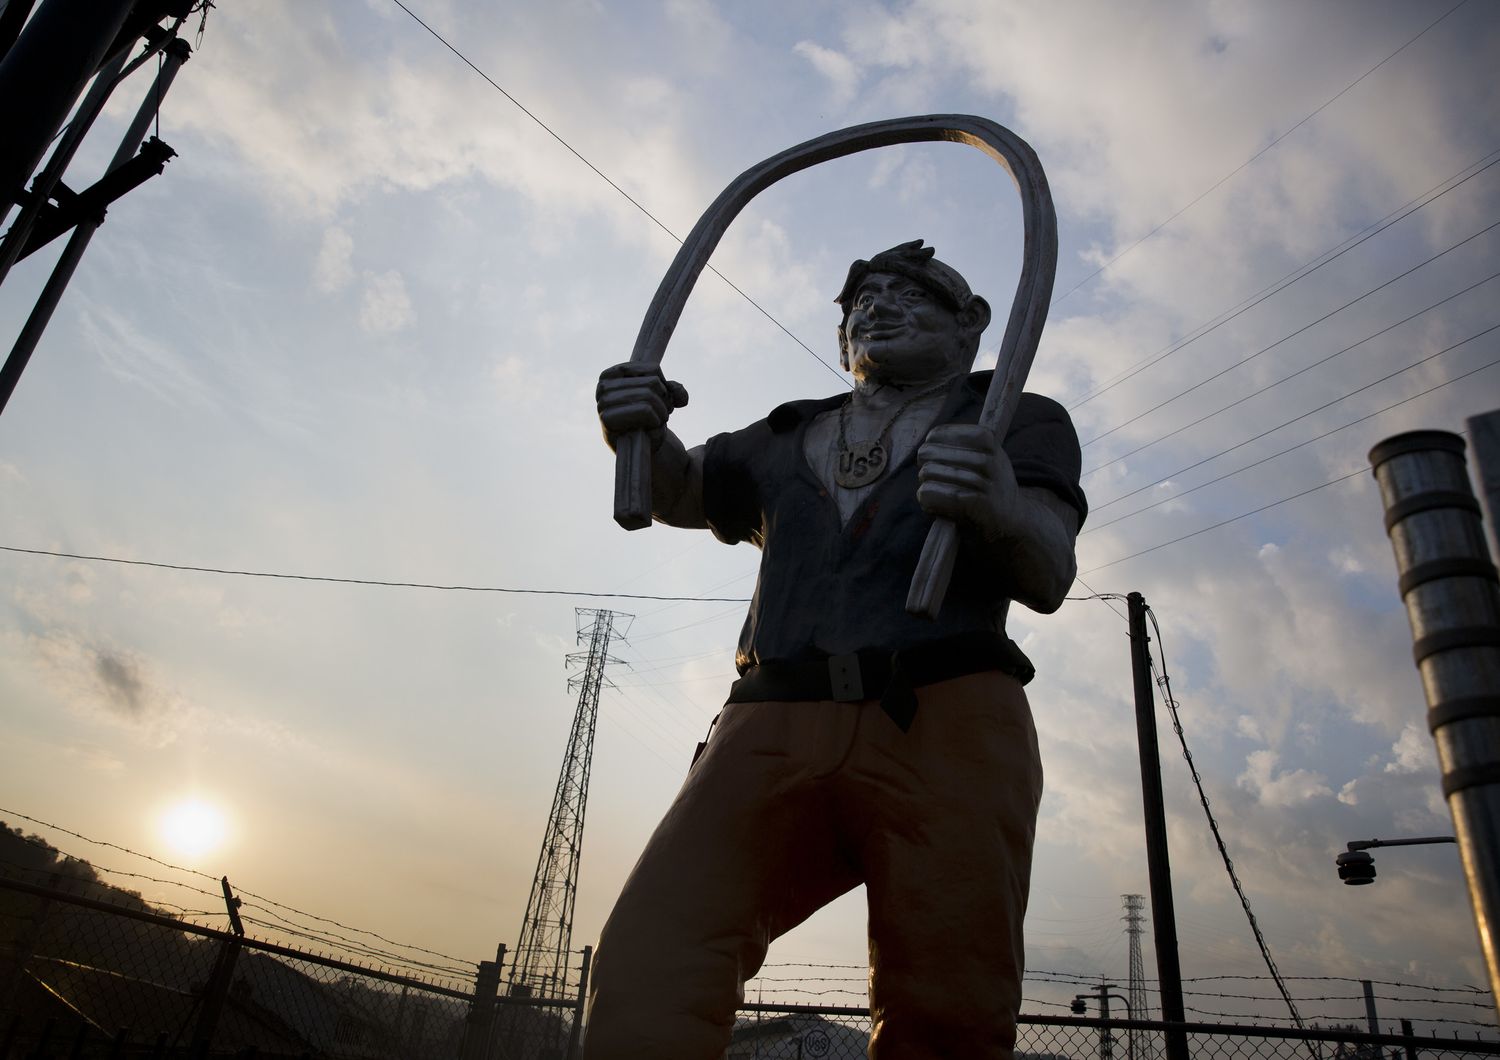 Una statua dell'eroe popolare Joe Magarac, l'uomo d'acciaio che proteggeva i lavoratori della siderurgia a Braddock, in Pennsylvania